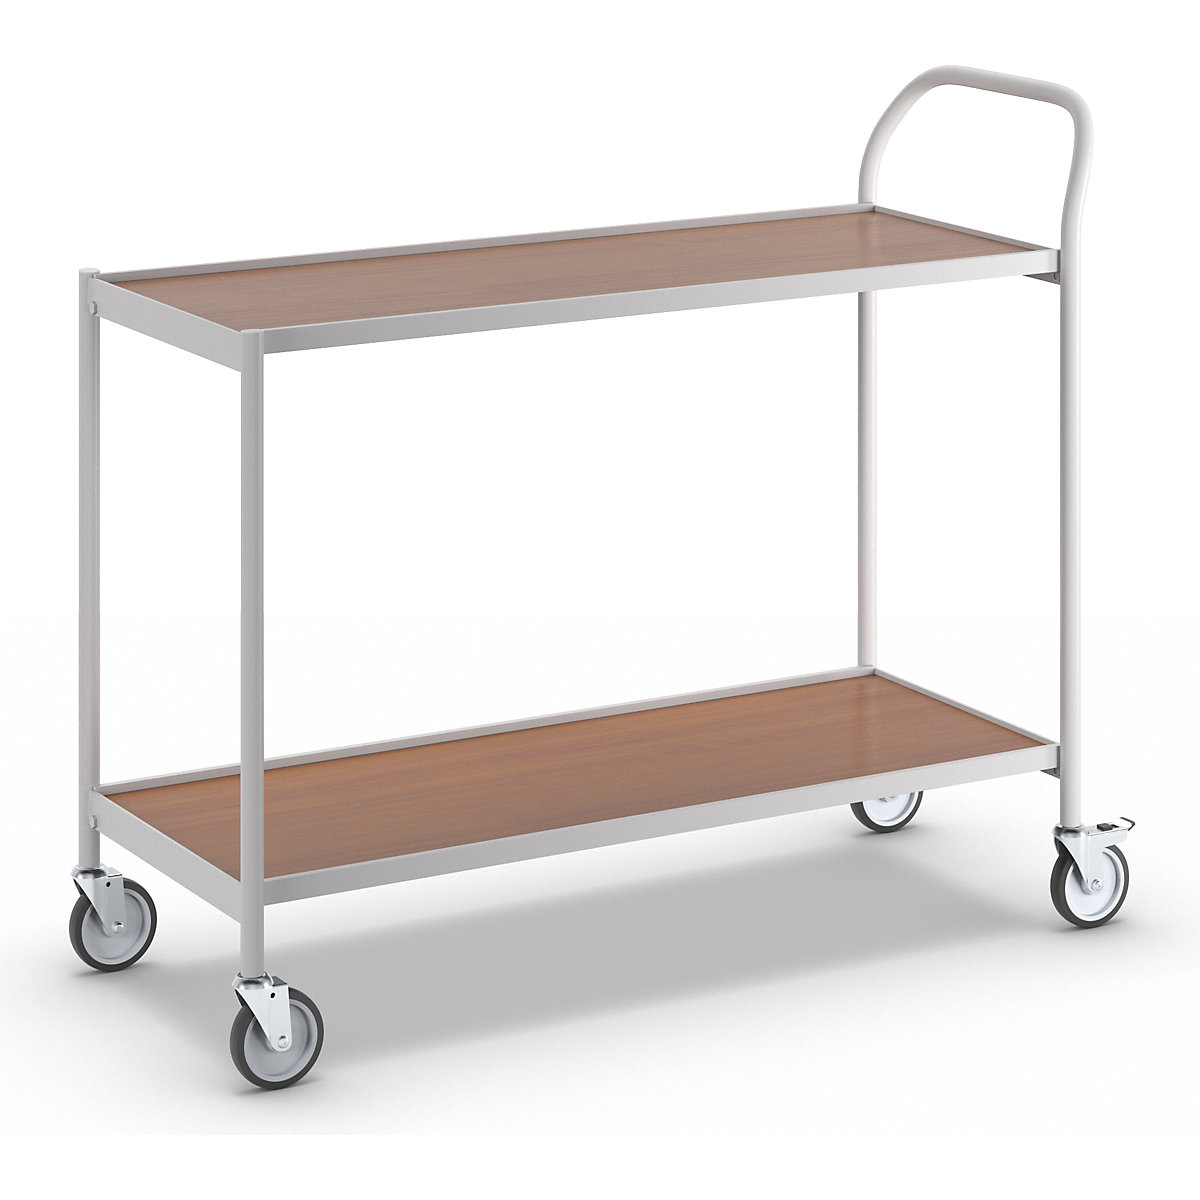 Stolový vozík – HelgeNyberg, 2 poschodia, d x š 1000 x 420 mm, šedá/buk-10